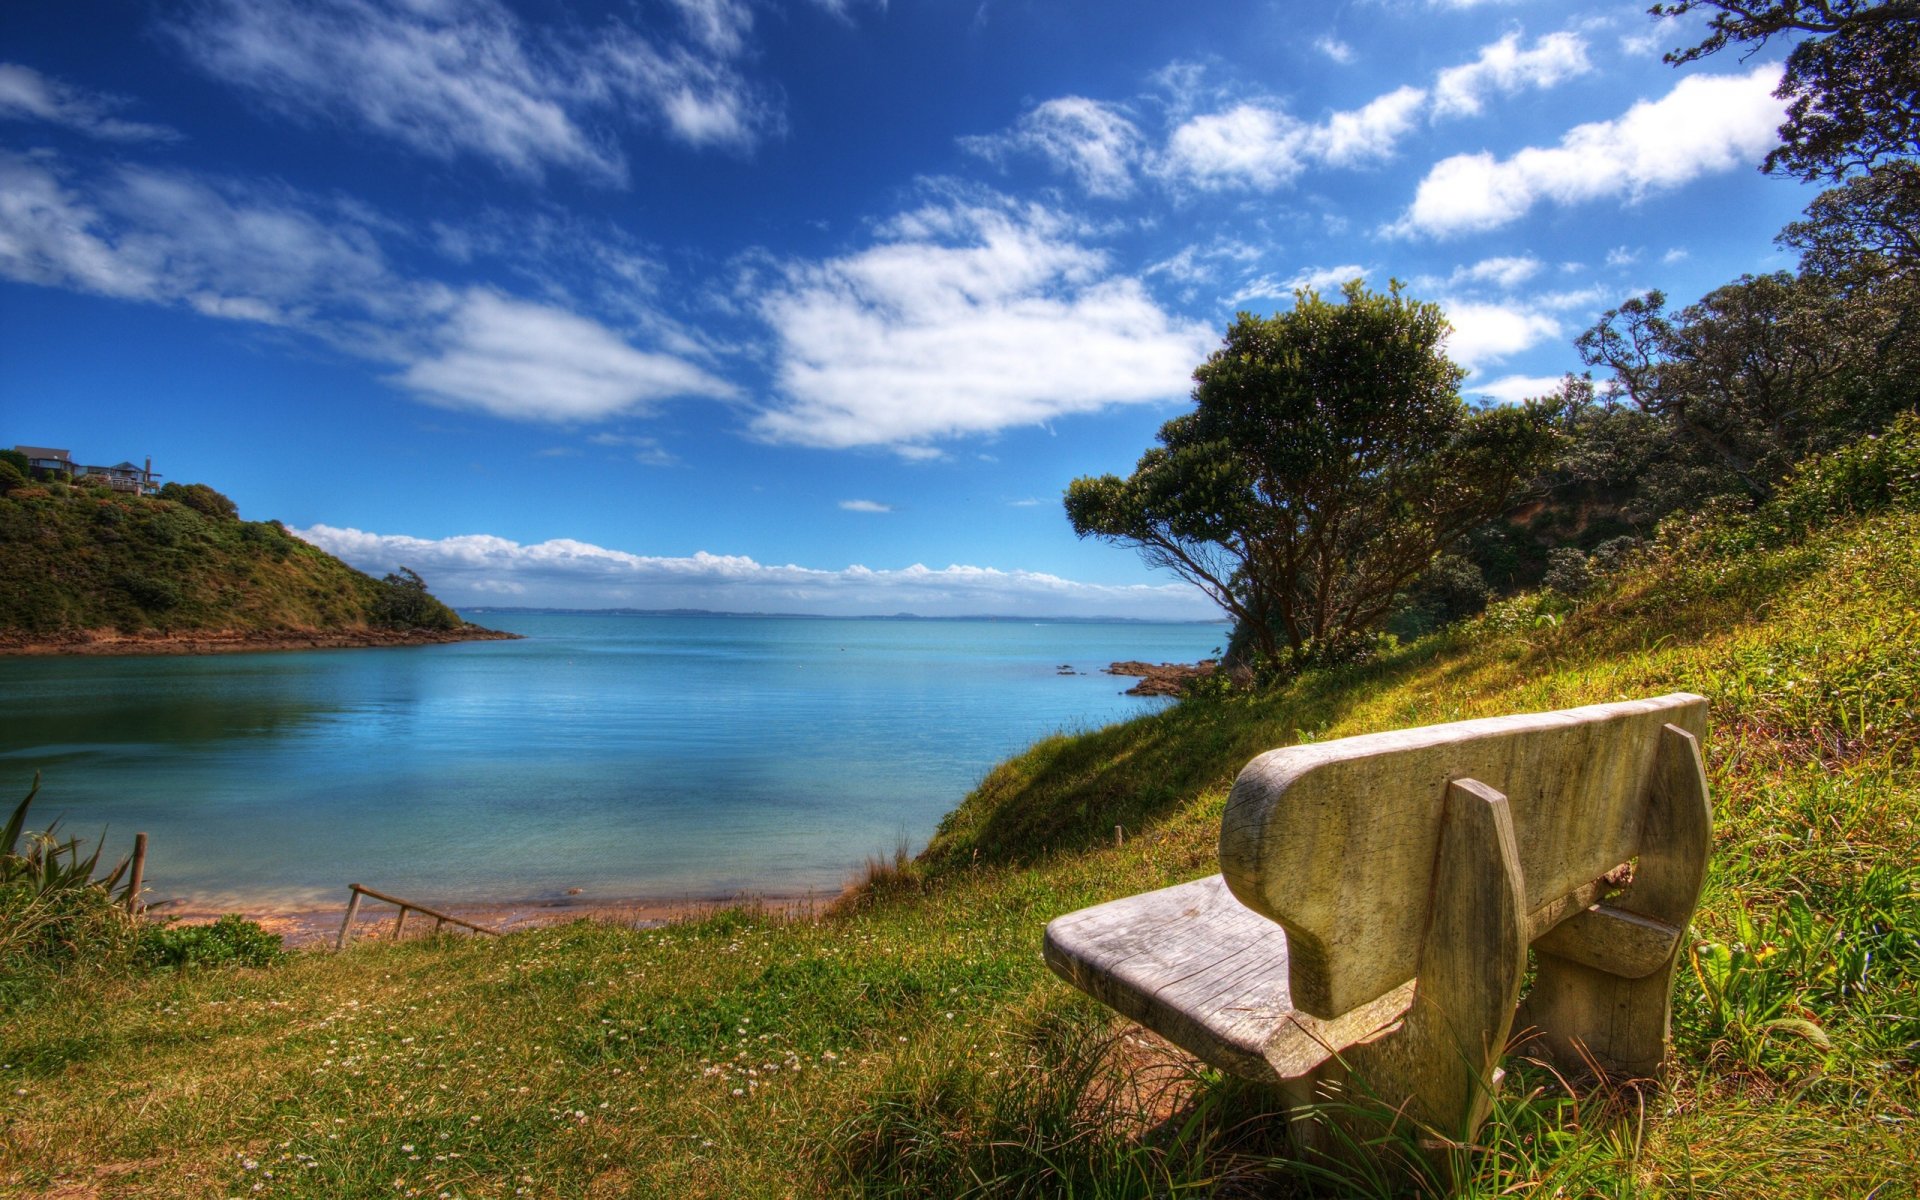 Beautiful place. Азорские острова. Вид на озеро с берега. Умиротворяющая природа. Скамейка у моря.